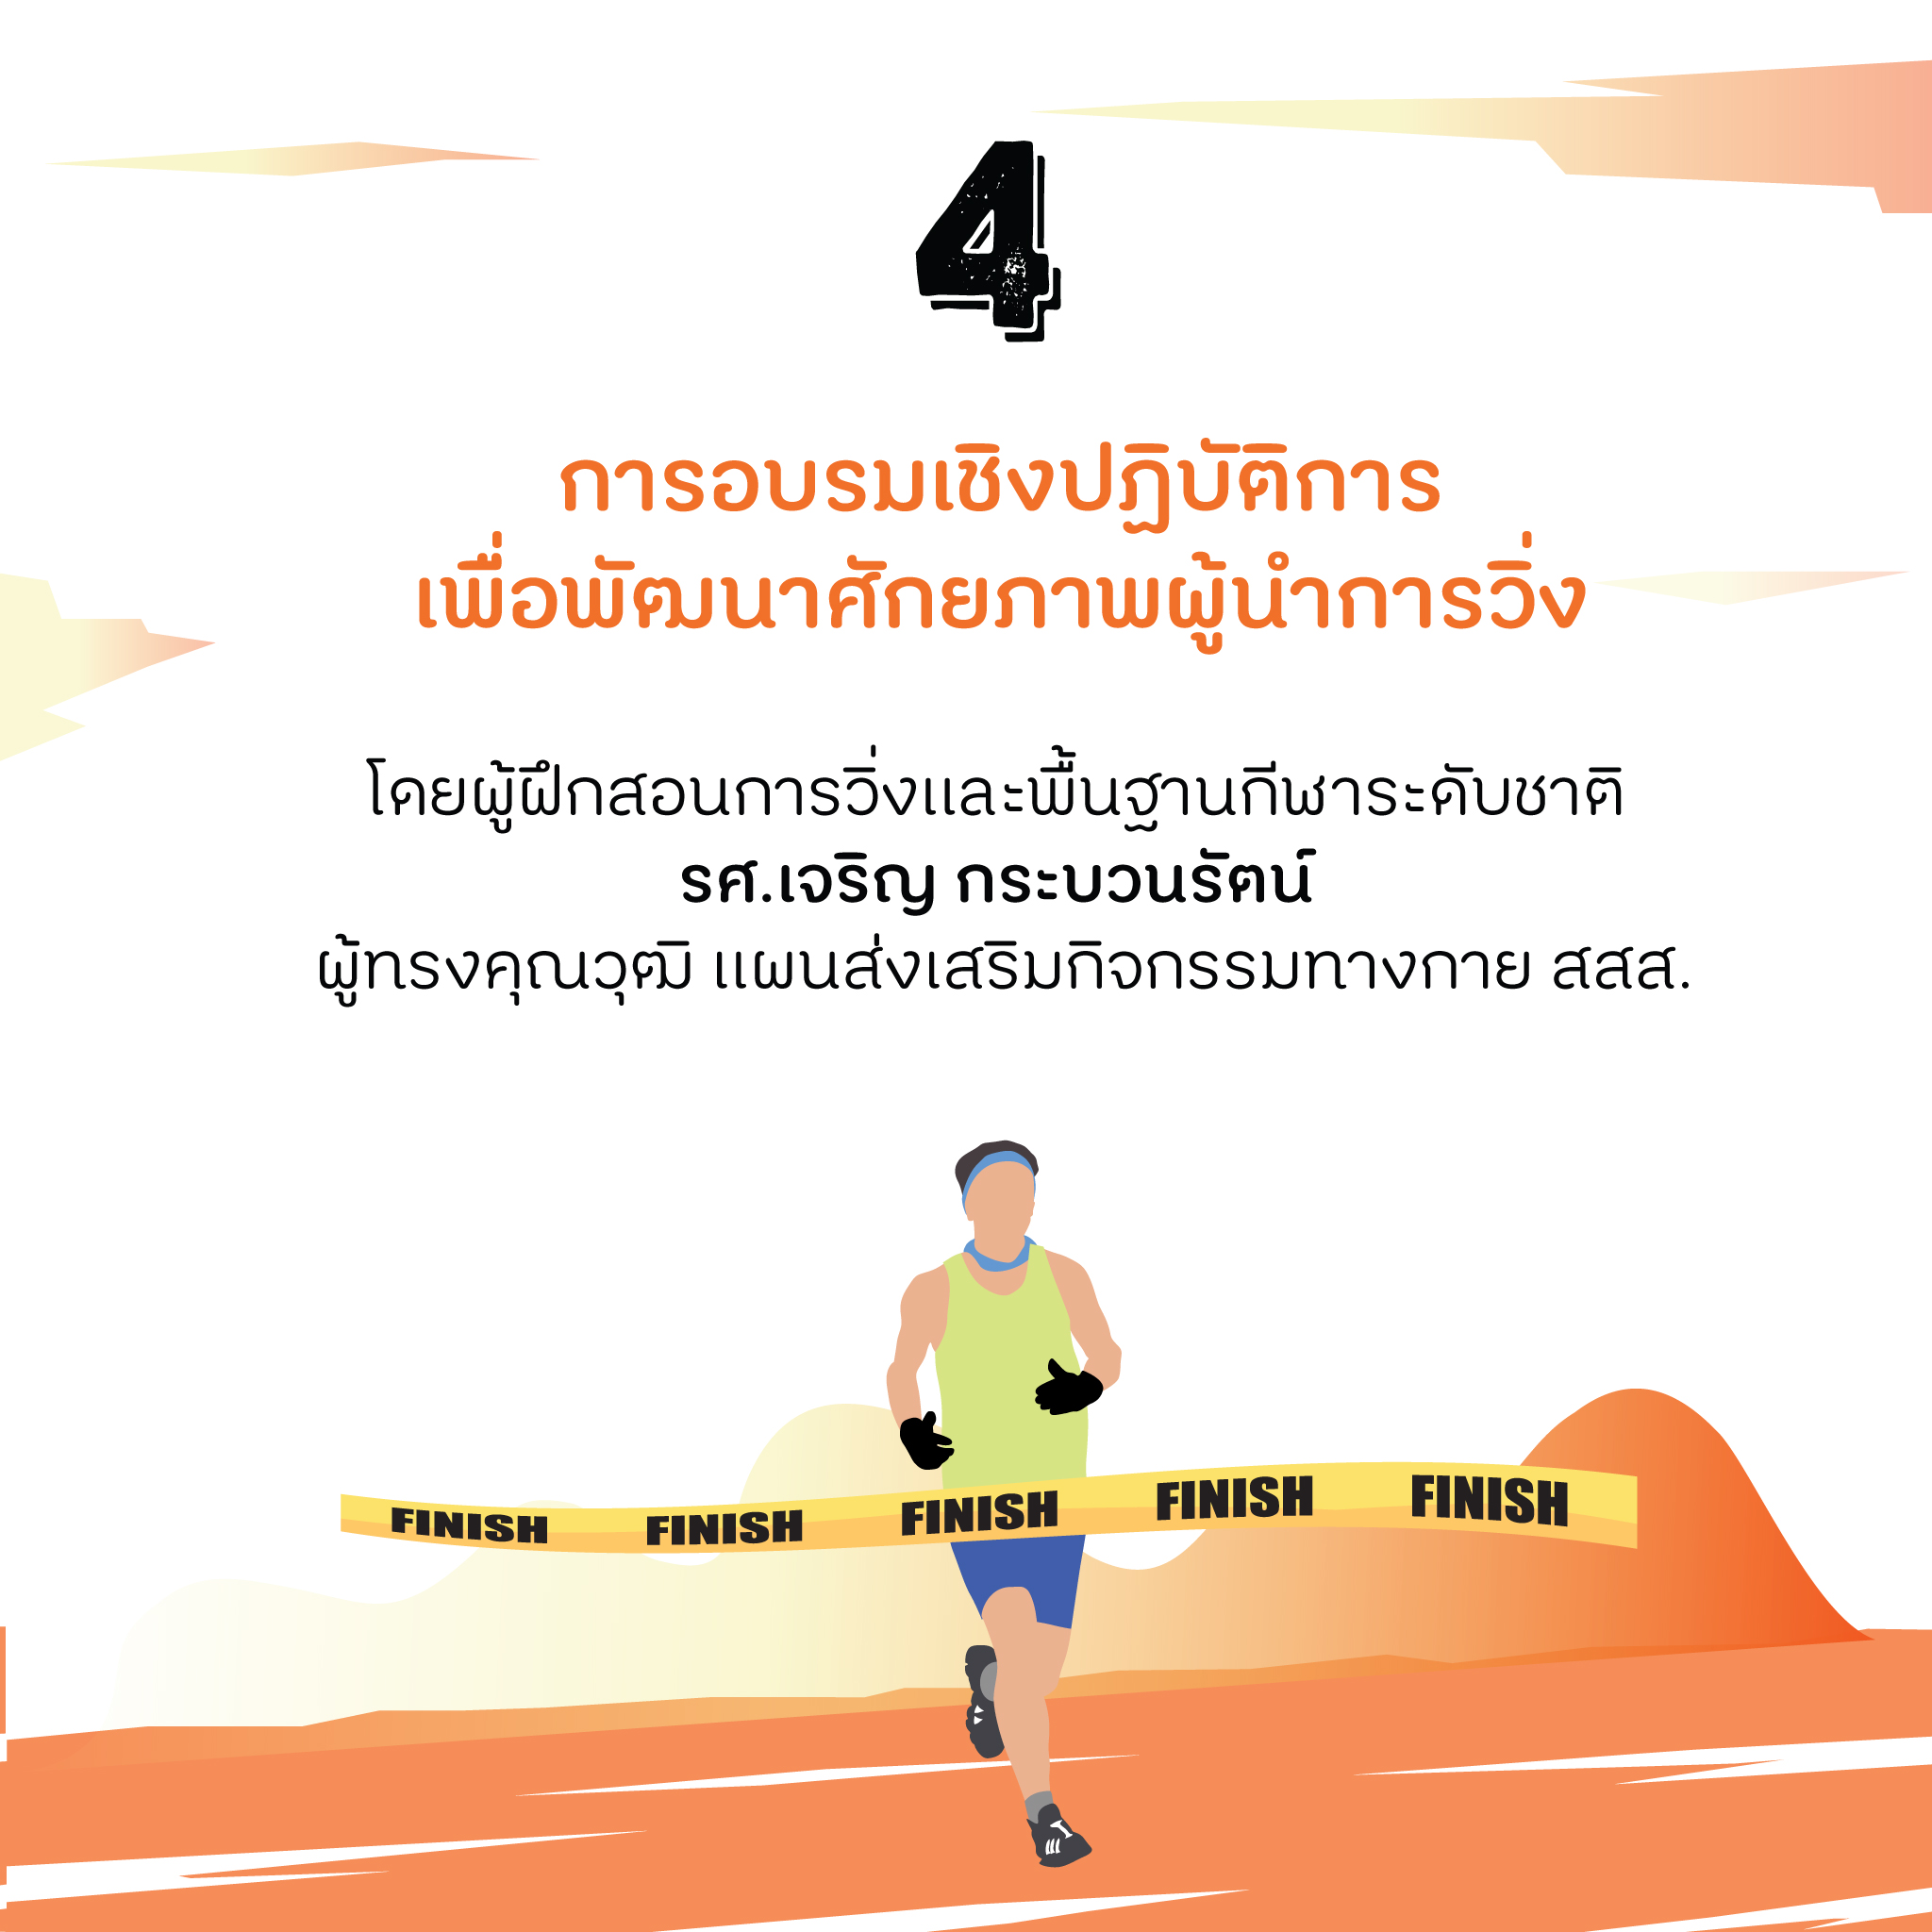 9 ข้อควรรู้ในงาน Thai Health Day Run 2017  thaihealth